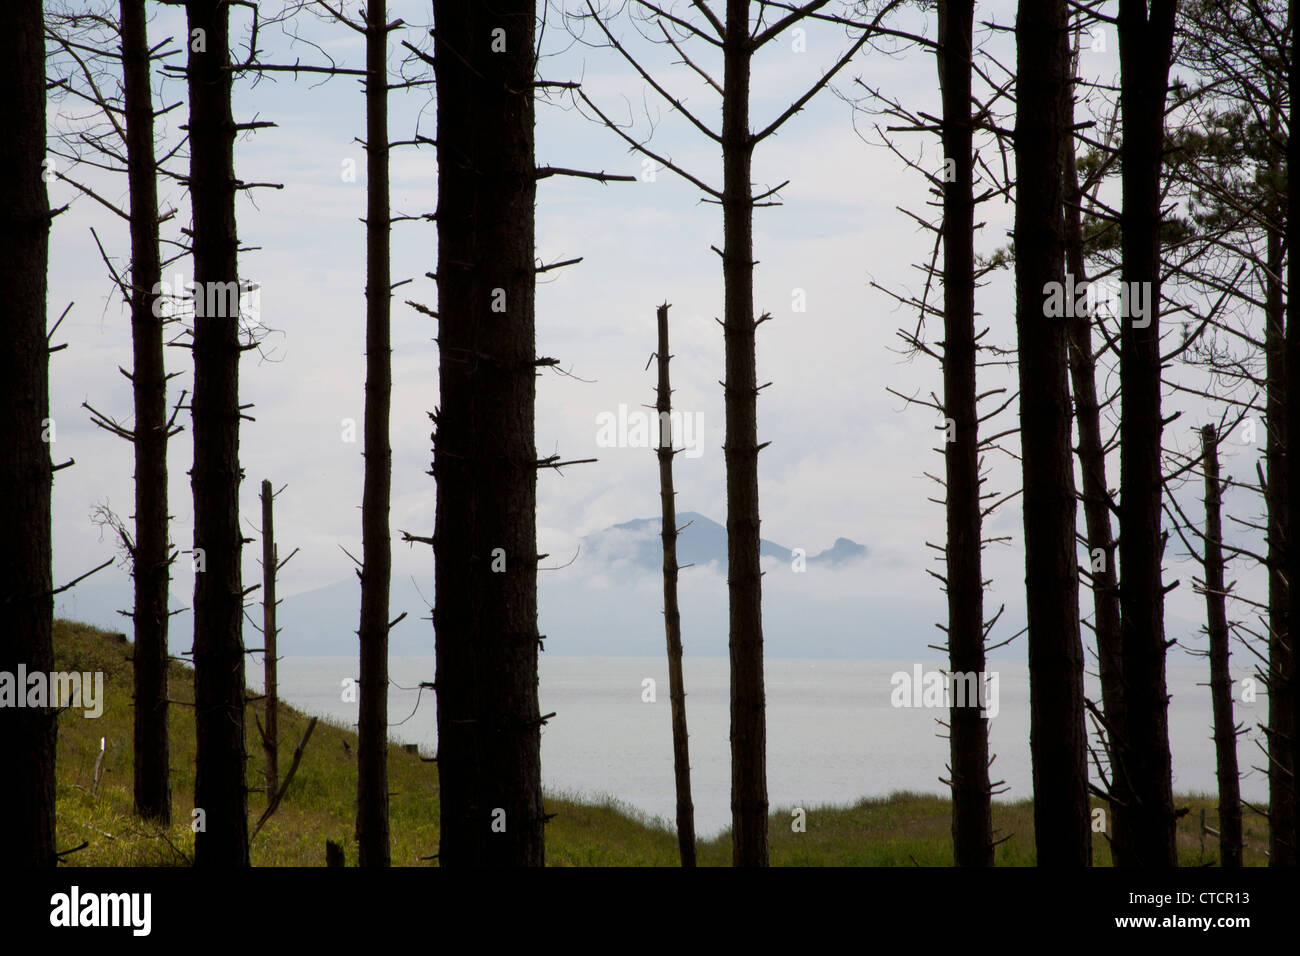 Il bordo della foresta di pini larici alberi con Snowdonia in background Newborough Forest Anglesey North Wales UK Foto Stock